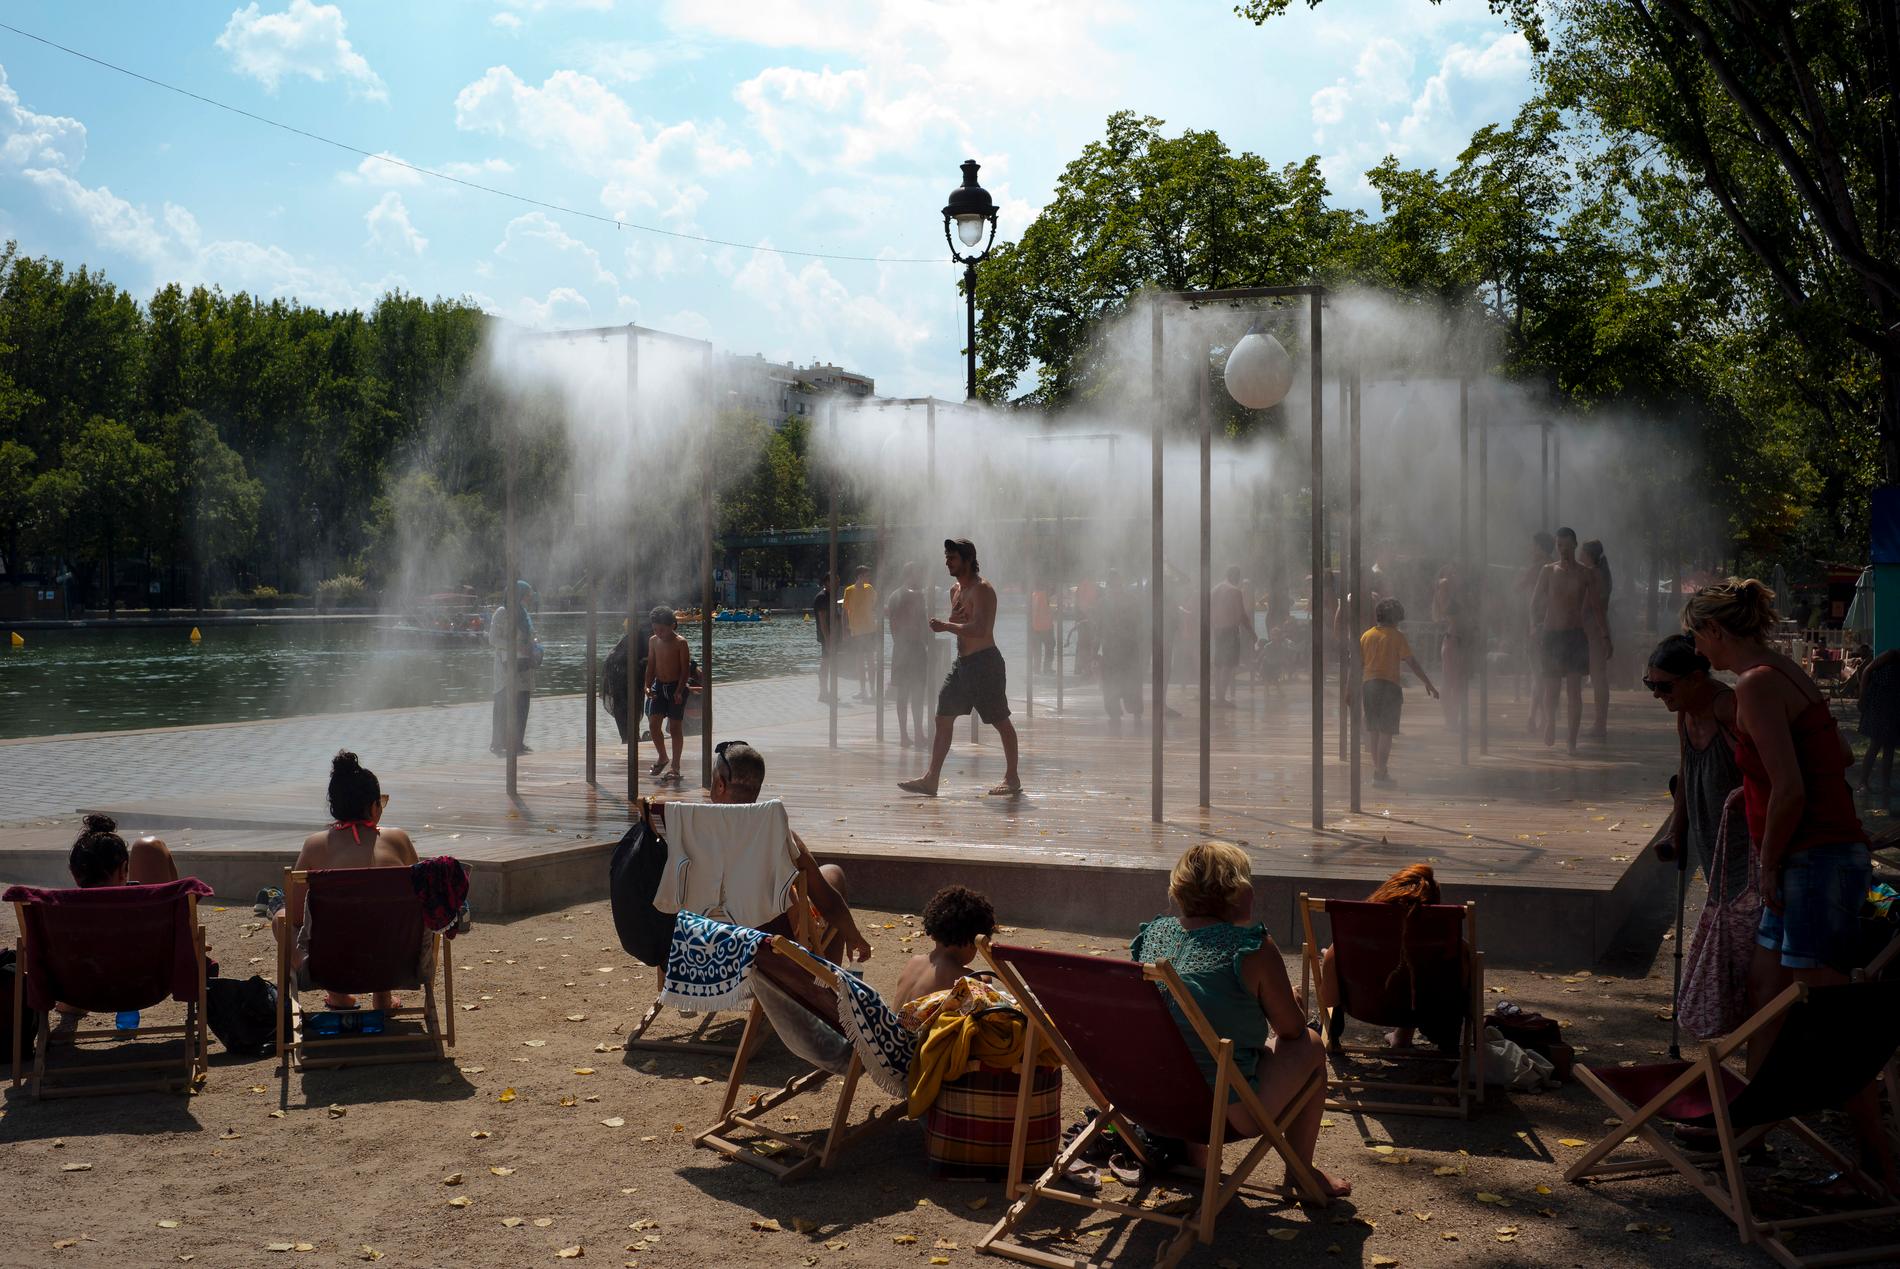 I Paris ska asfalt bytas ut mot jord och det ska gå att bada i Seine – dessutom krisövar befolkningen för temperaturer på uppåt 50 grader.